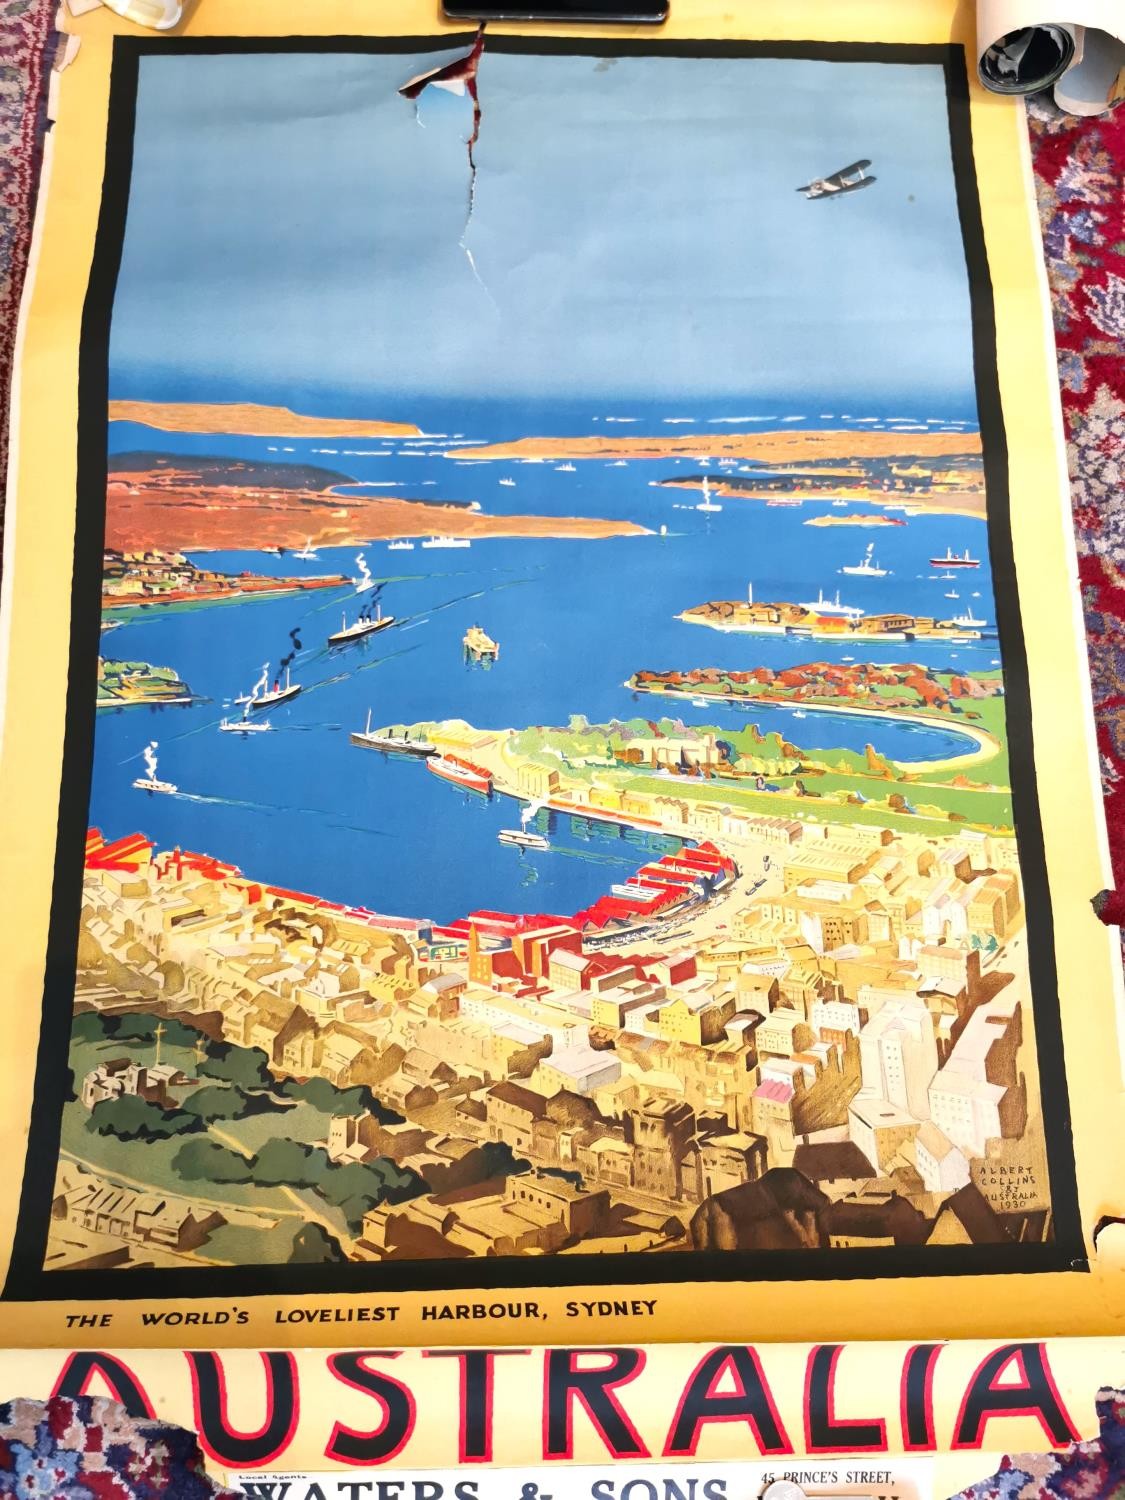 Albert E. Collins, The World’s Loveliest Harbour, Sydney, Australia, 1930s travel poster advertising